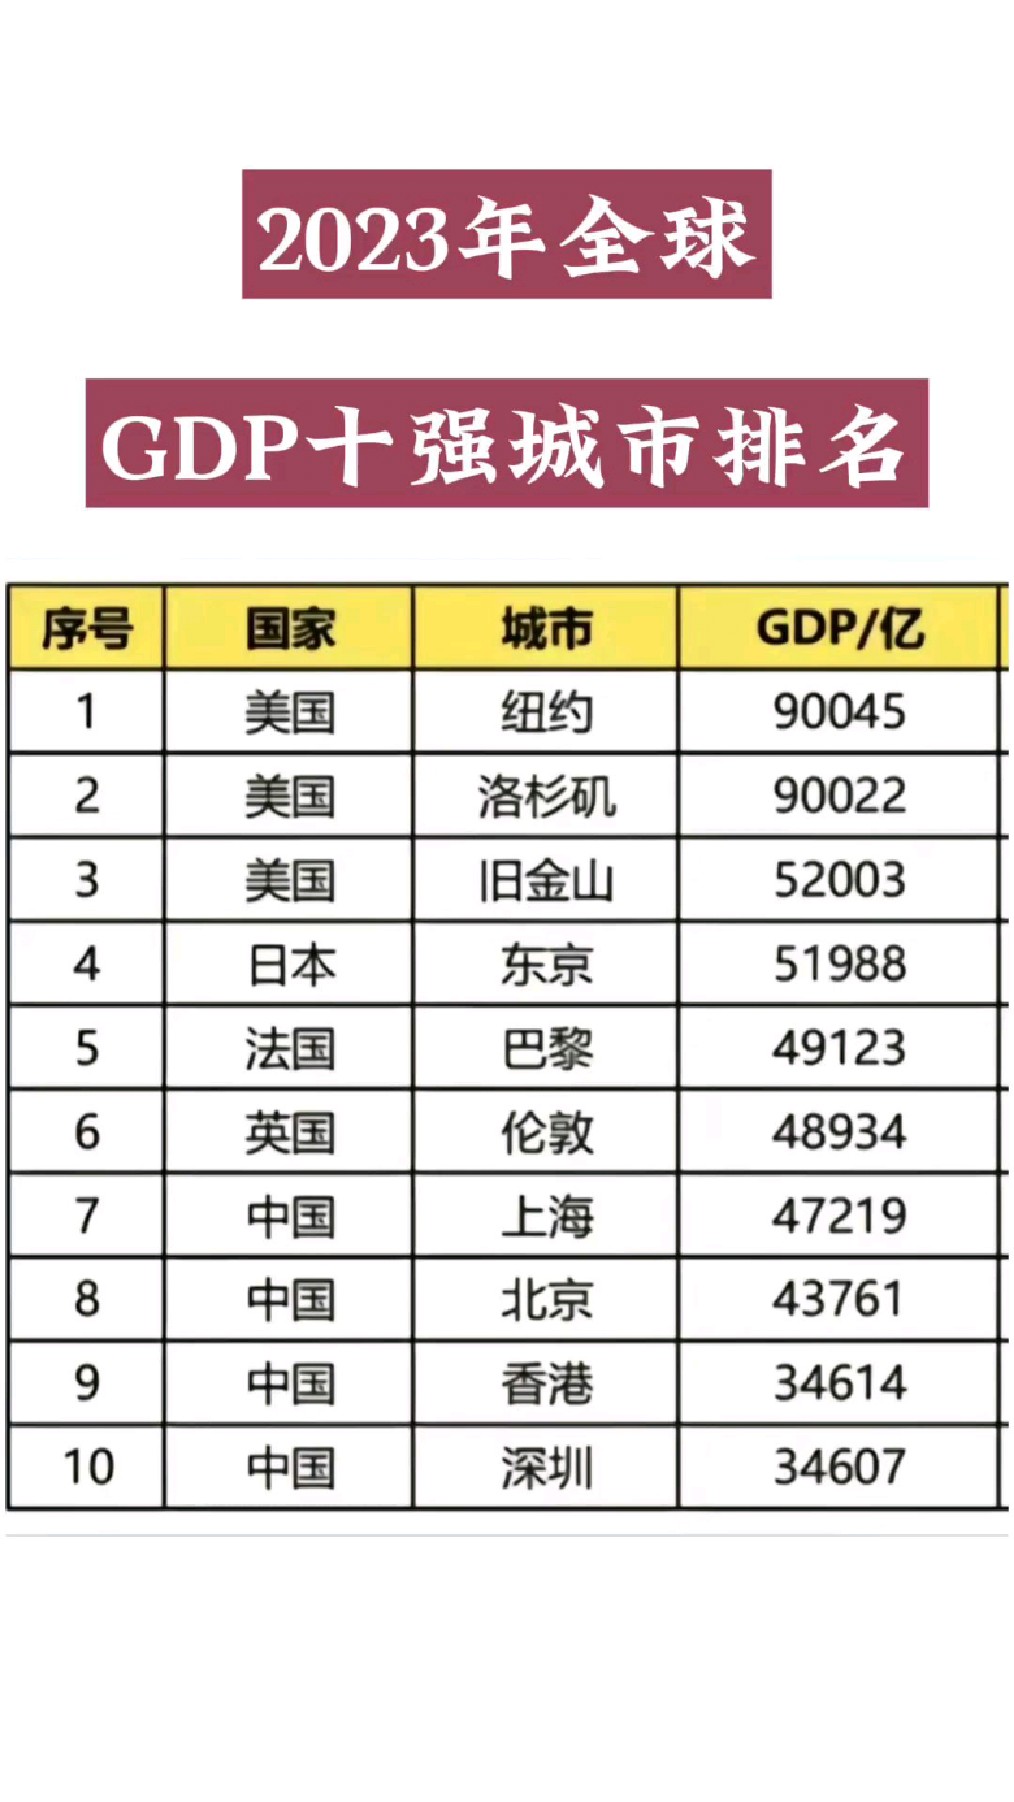 2023年全球gdp十强排名,中国有几席?